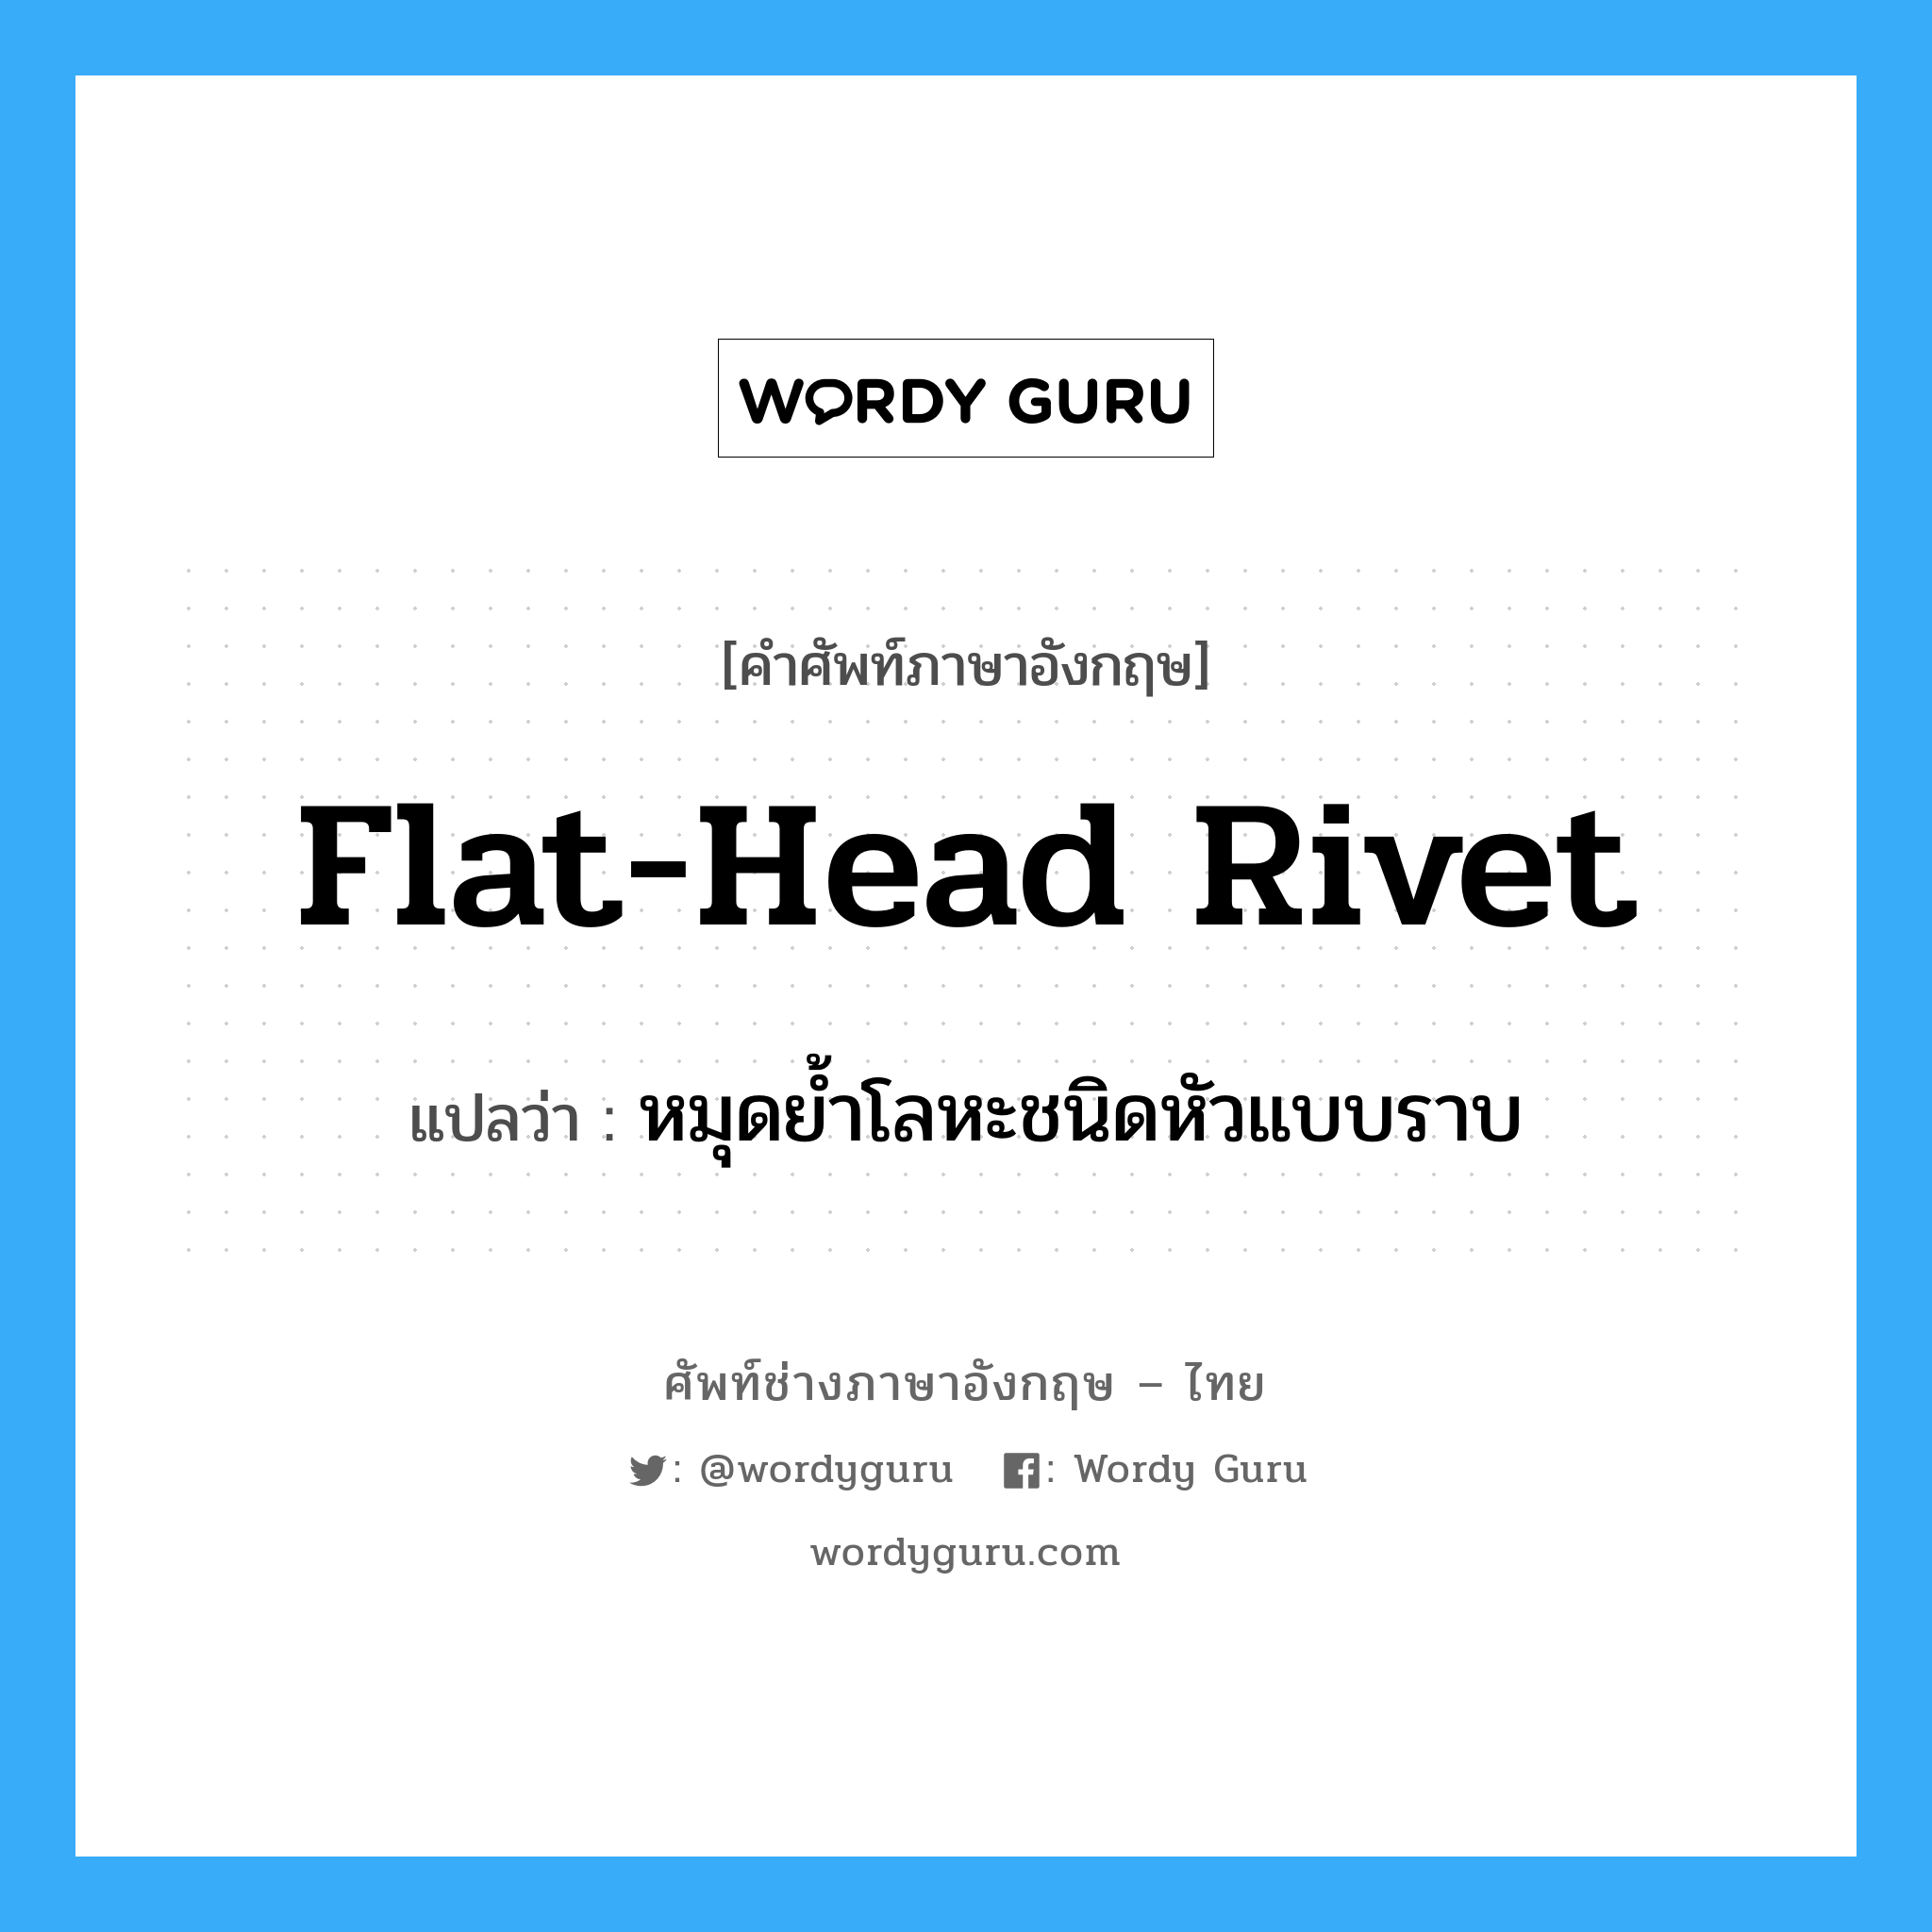 flat-head rivet แปลว่า?, คำศัพท์ช่างภาษาอังกฤษ - ไทย flat-head rivet คำศัพท์ภาษาอังกฤษ flat-head rivet แปลว่า หมุดย้ำโลหะชนิดหัวแบบราบ